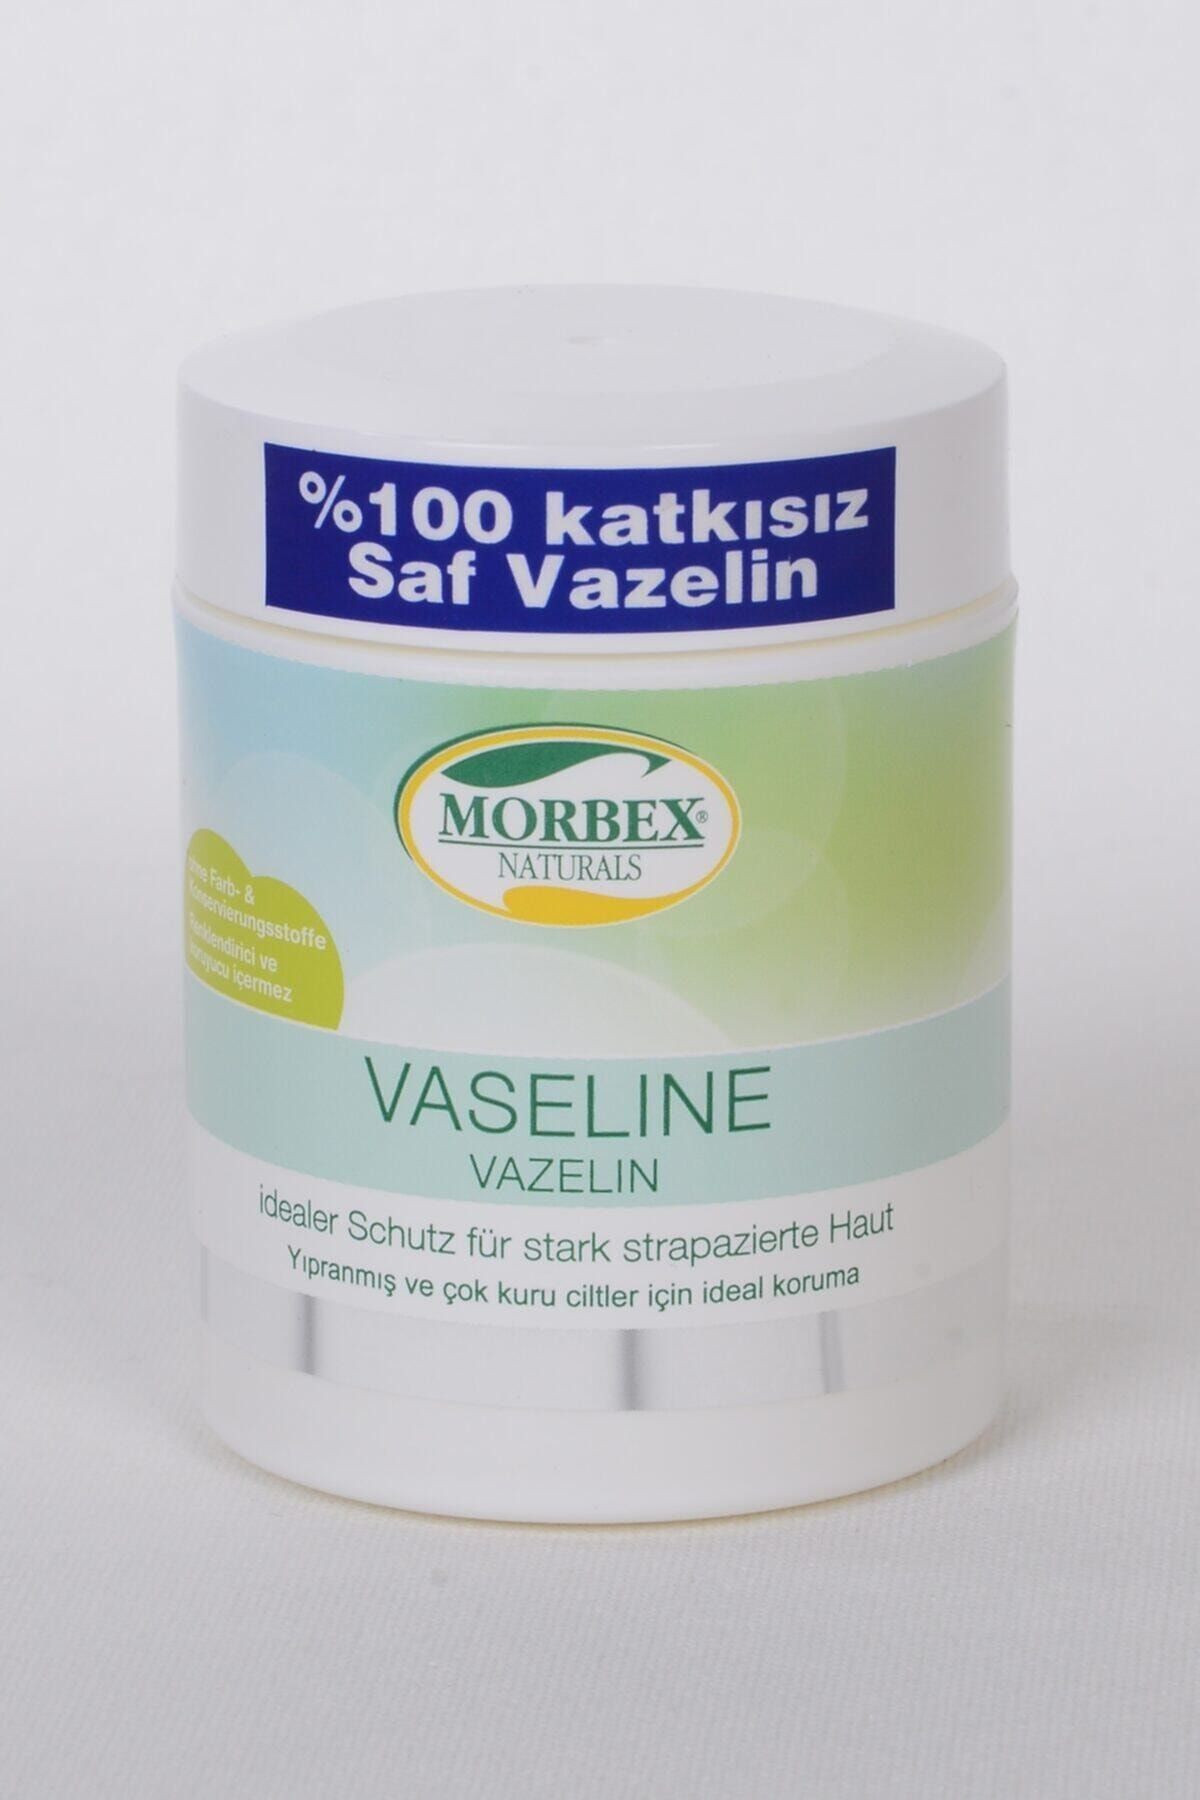 SCHMESS Morbex Sensitive Saf Katkısız Vazelin 125 ml Vaseline